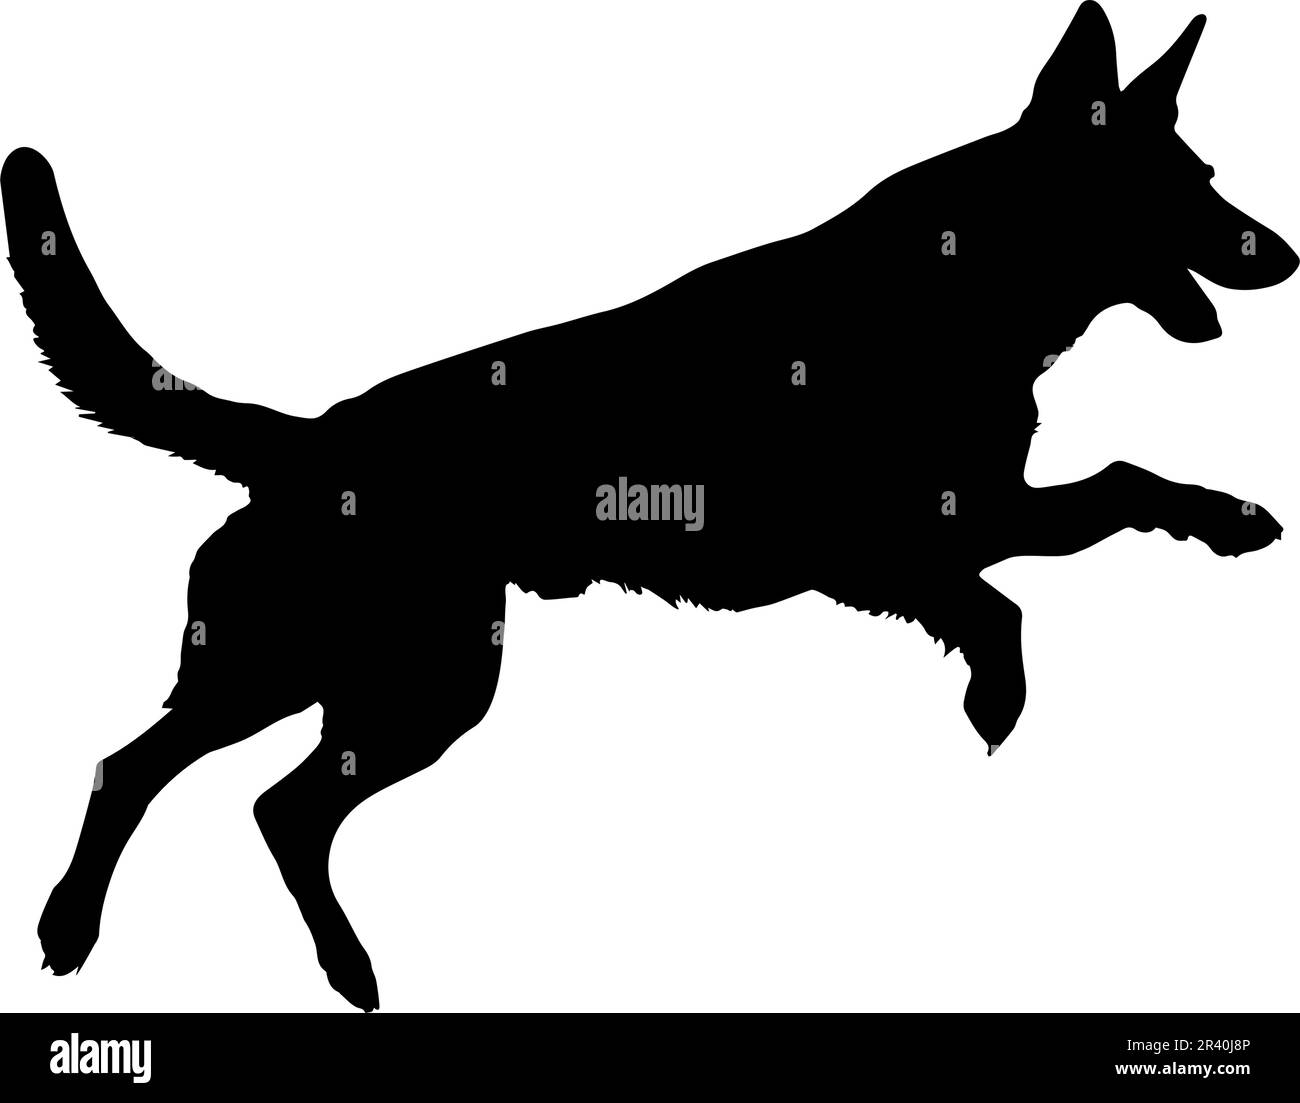 Gesprungene Silhouette des Schäferhundes isoliert auf weißem Hintergrund. Vektordarstellung Stock Vektor